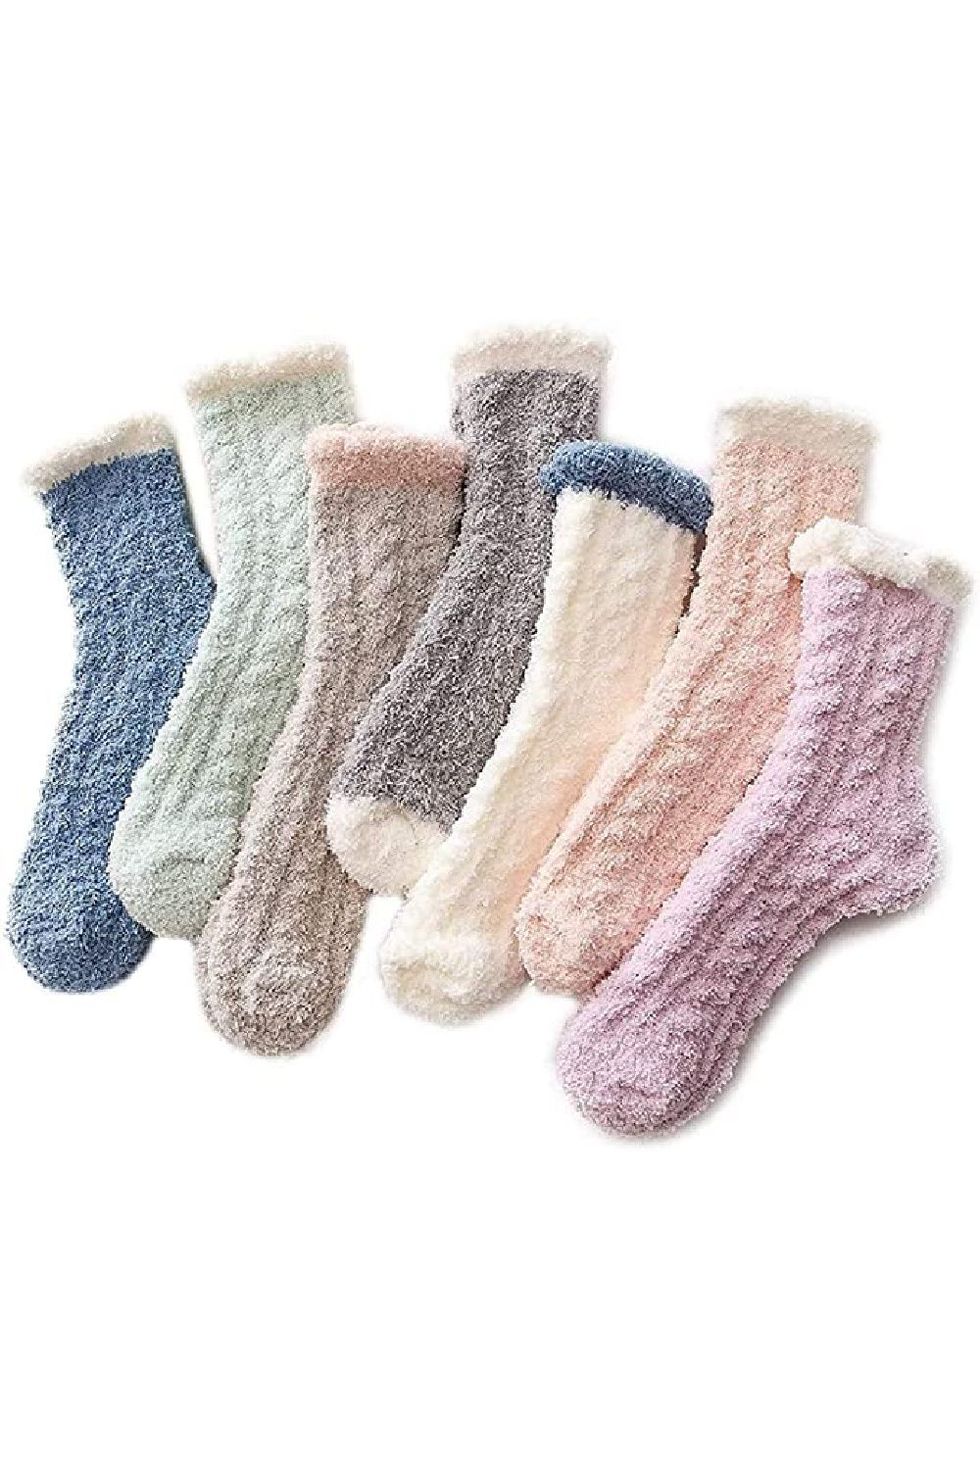 Women's Fuzzy Slipper Warm Extra Soft Winter Cozy Ankle Christmas Socks